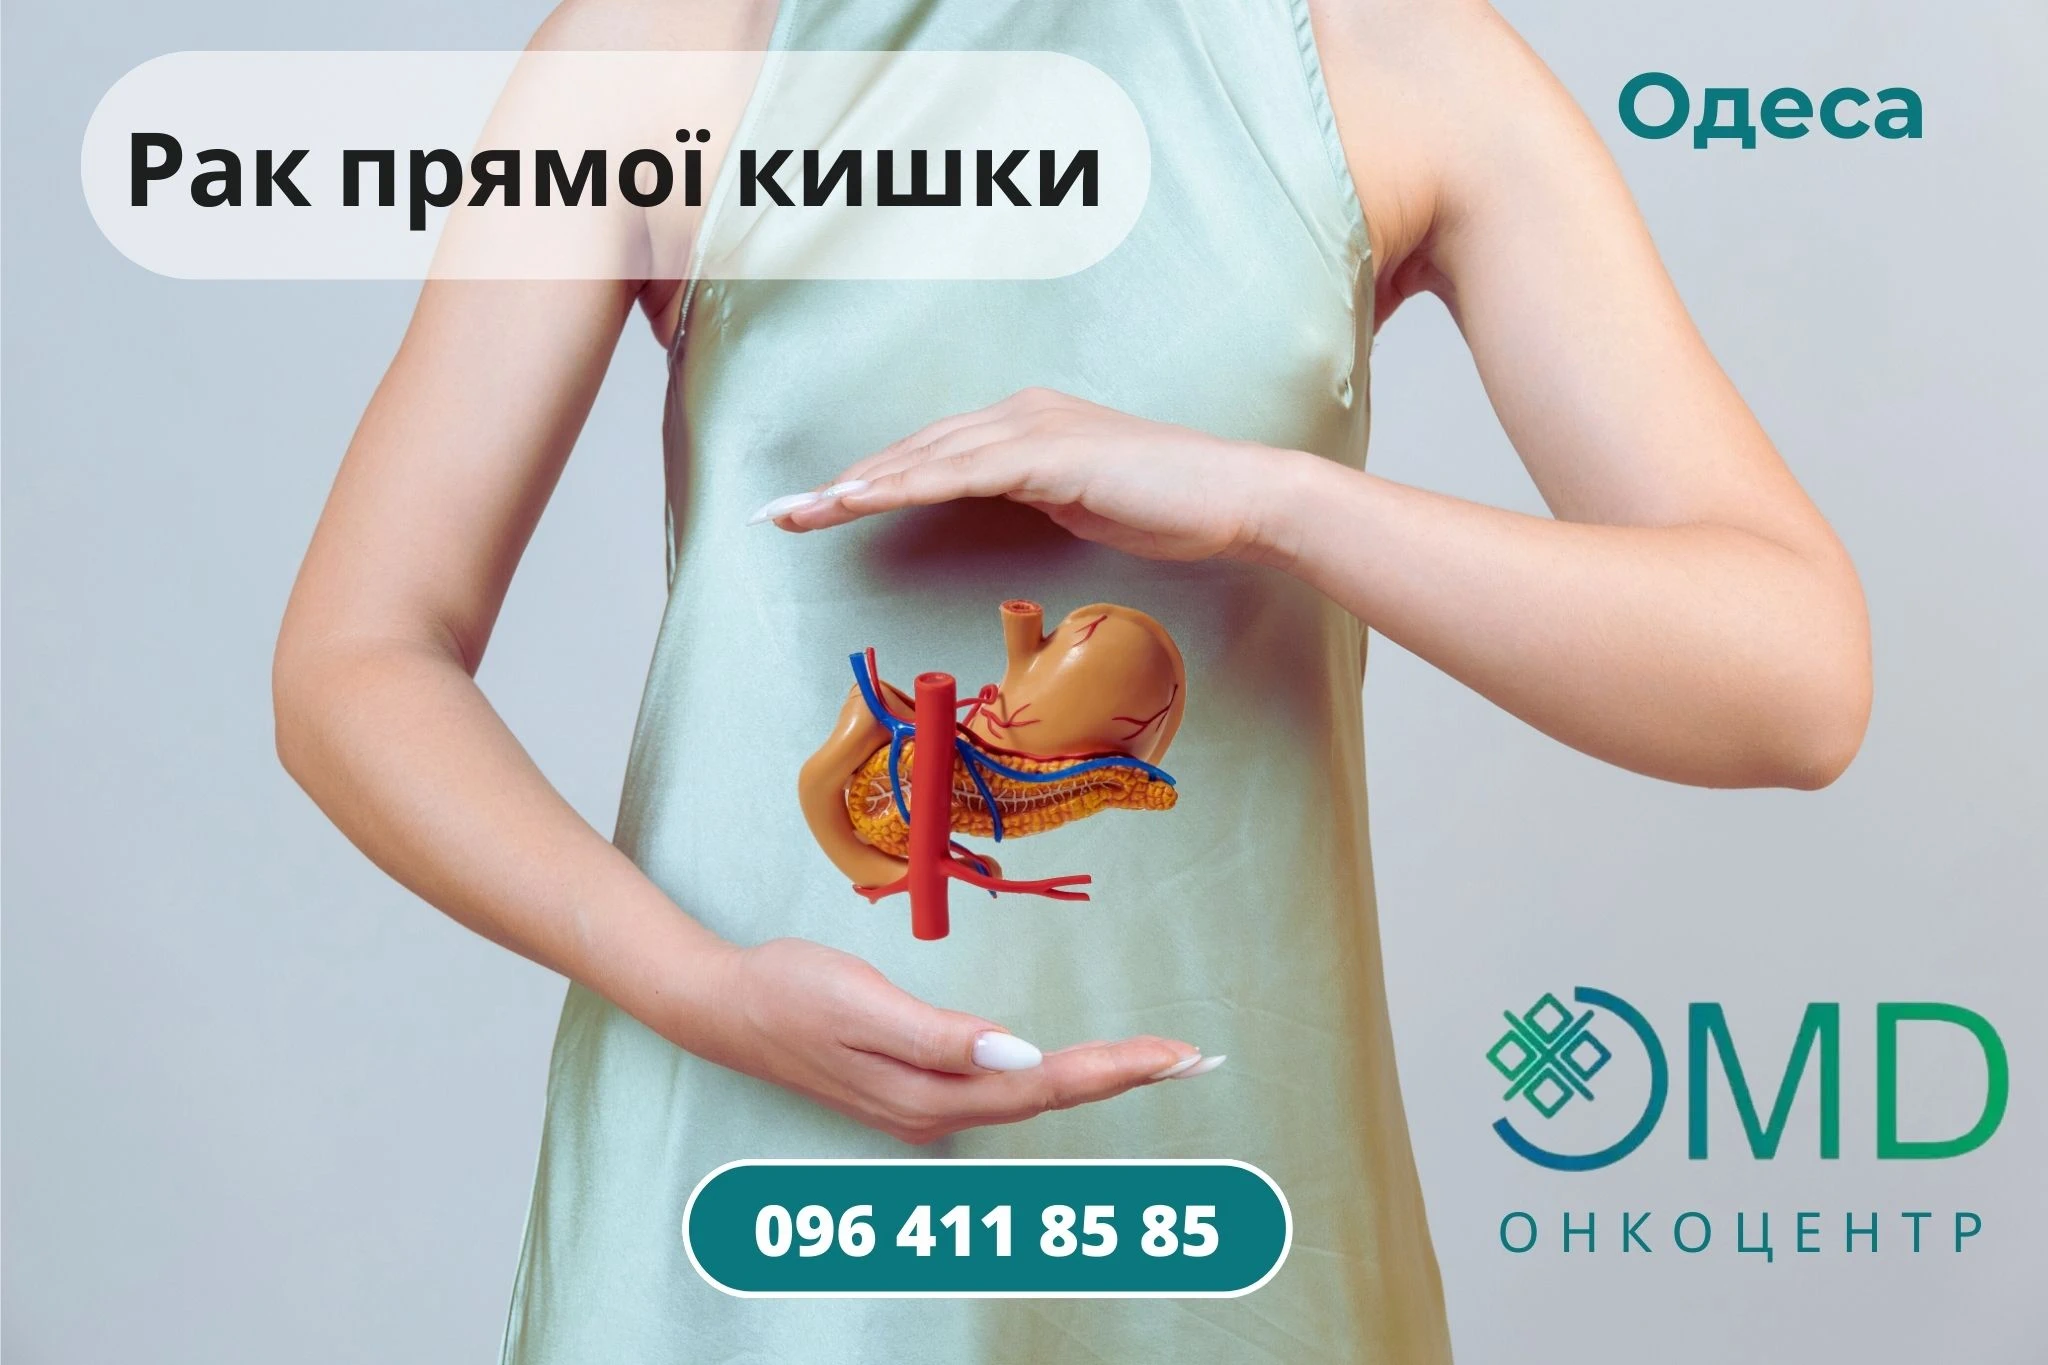 Рак прямой кишки Лечение и диагностика Одесса Онкоцентр лечение ОМД онкоцентр